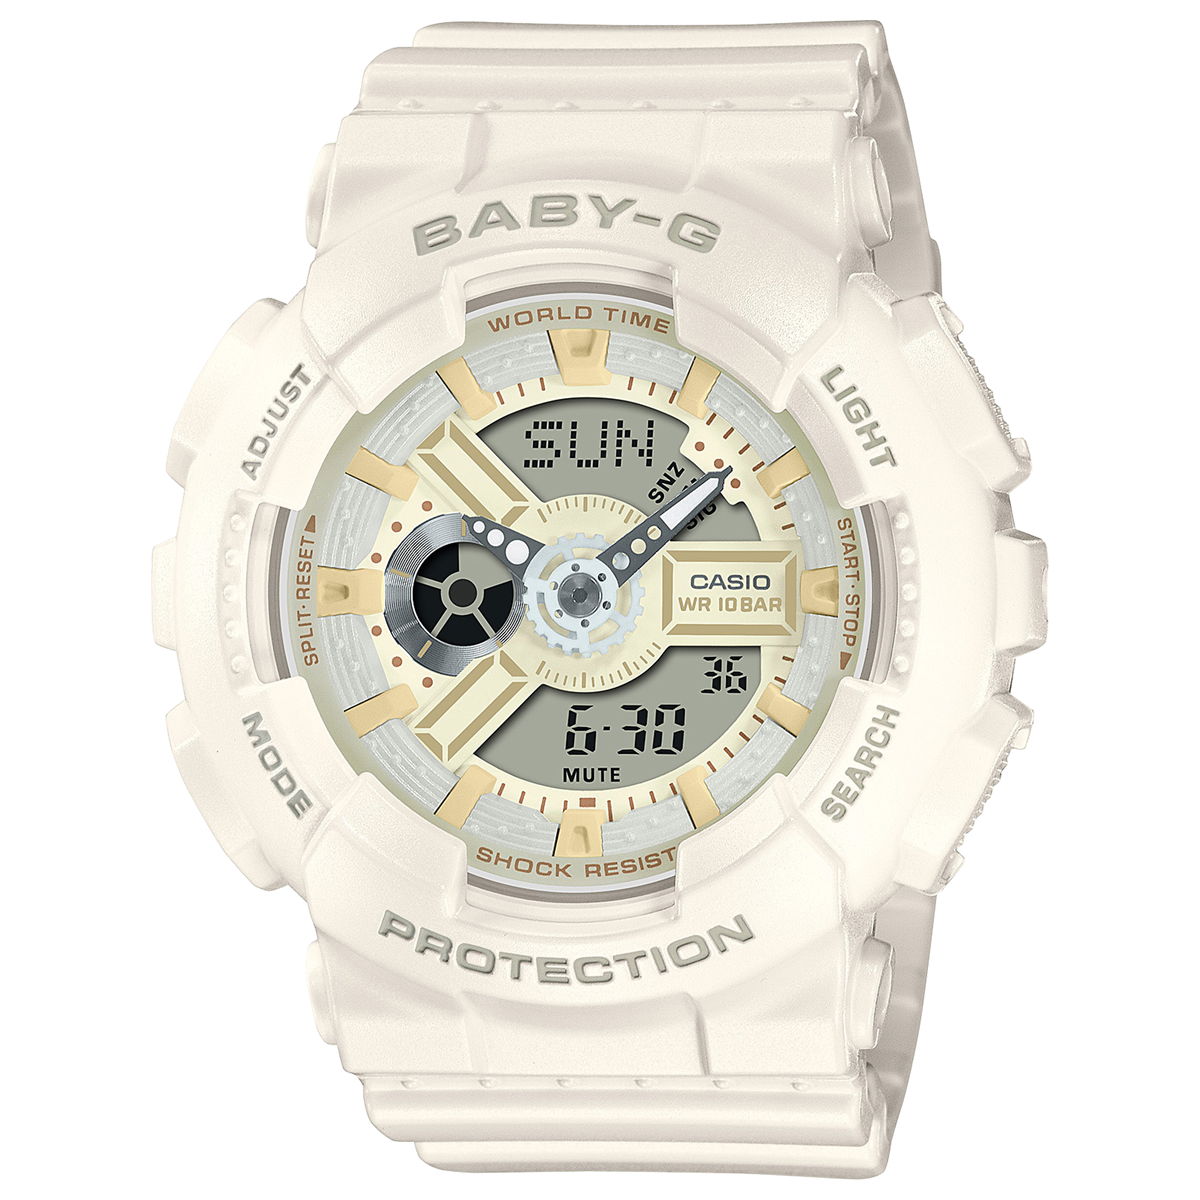 BABY-G カシオ ベビーG レディース 腕時計 BA-110XSW-7AJF ホワイトチョコレート オフホワイト